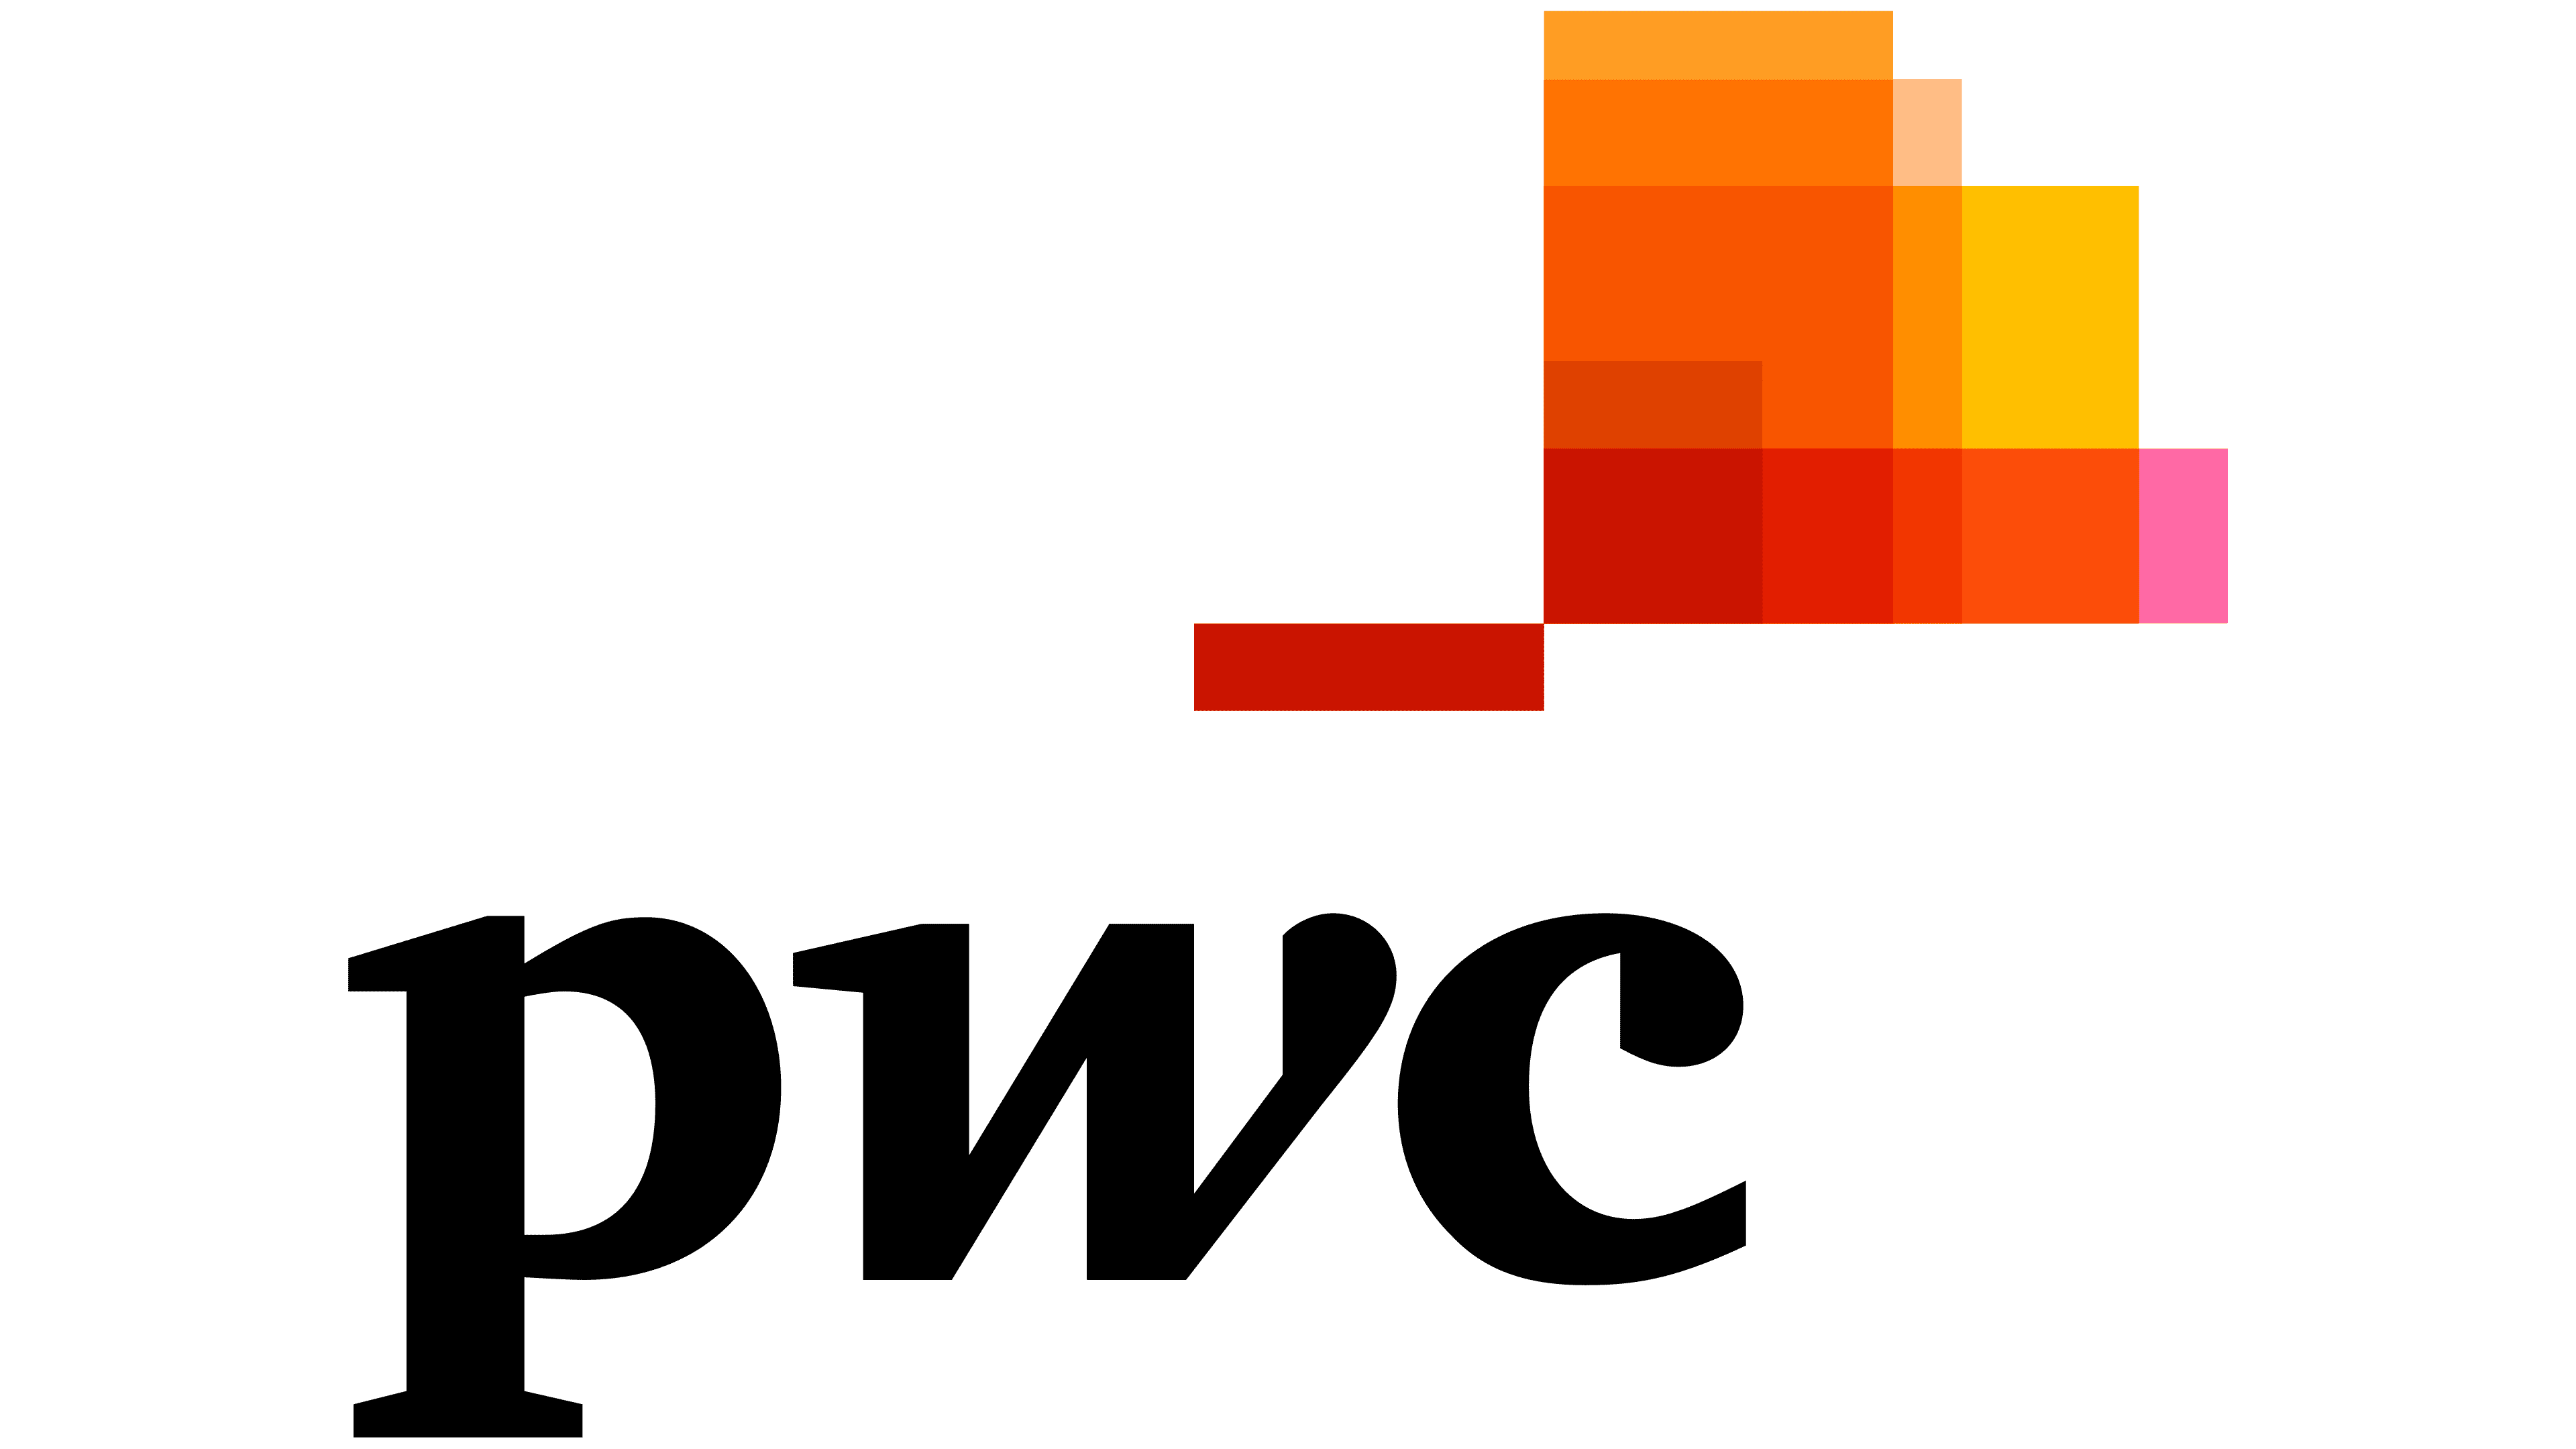 PwC Logo y símbolo, significado, historia, PNG, marca